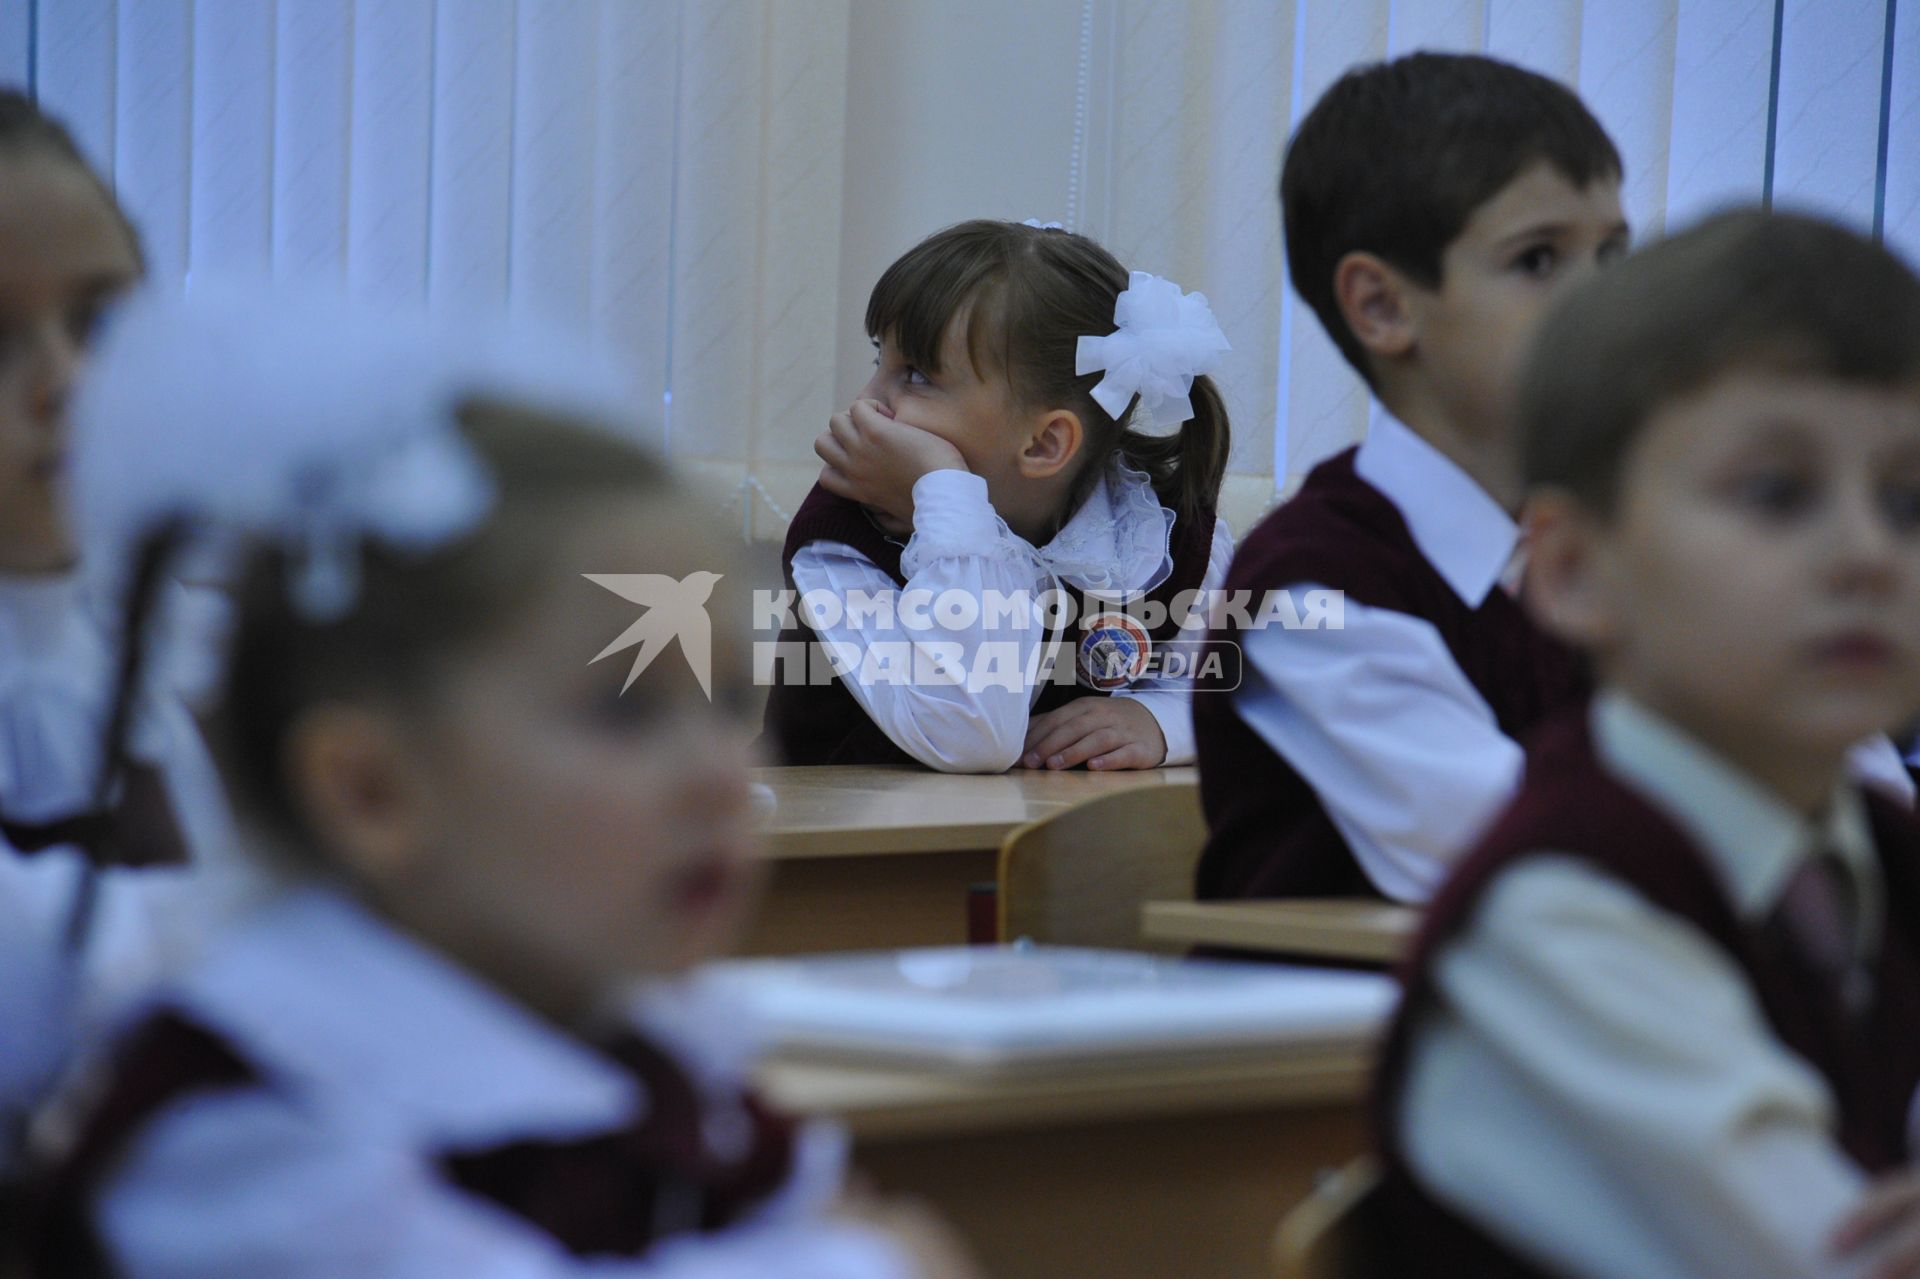 День знаний в российских школах. На снимке: девочка за партой. Ученица.1 сентября 2011 года